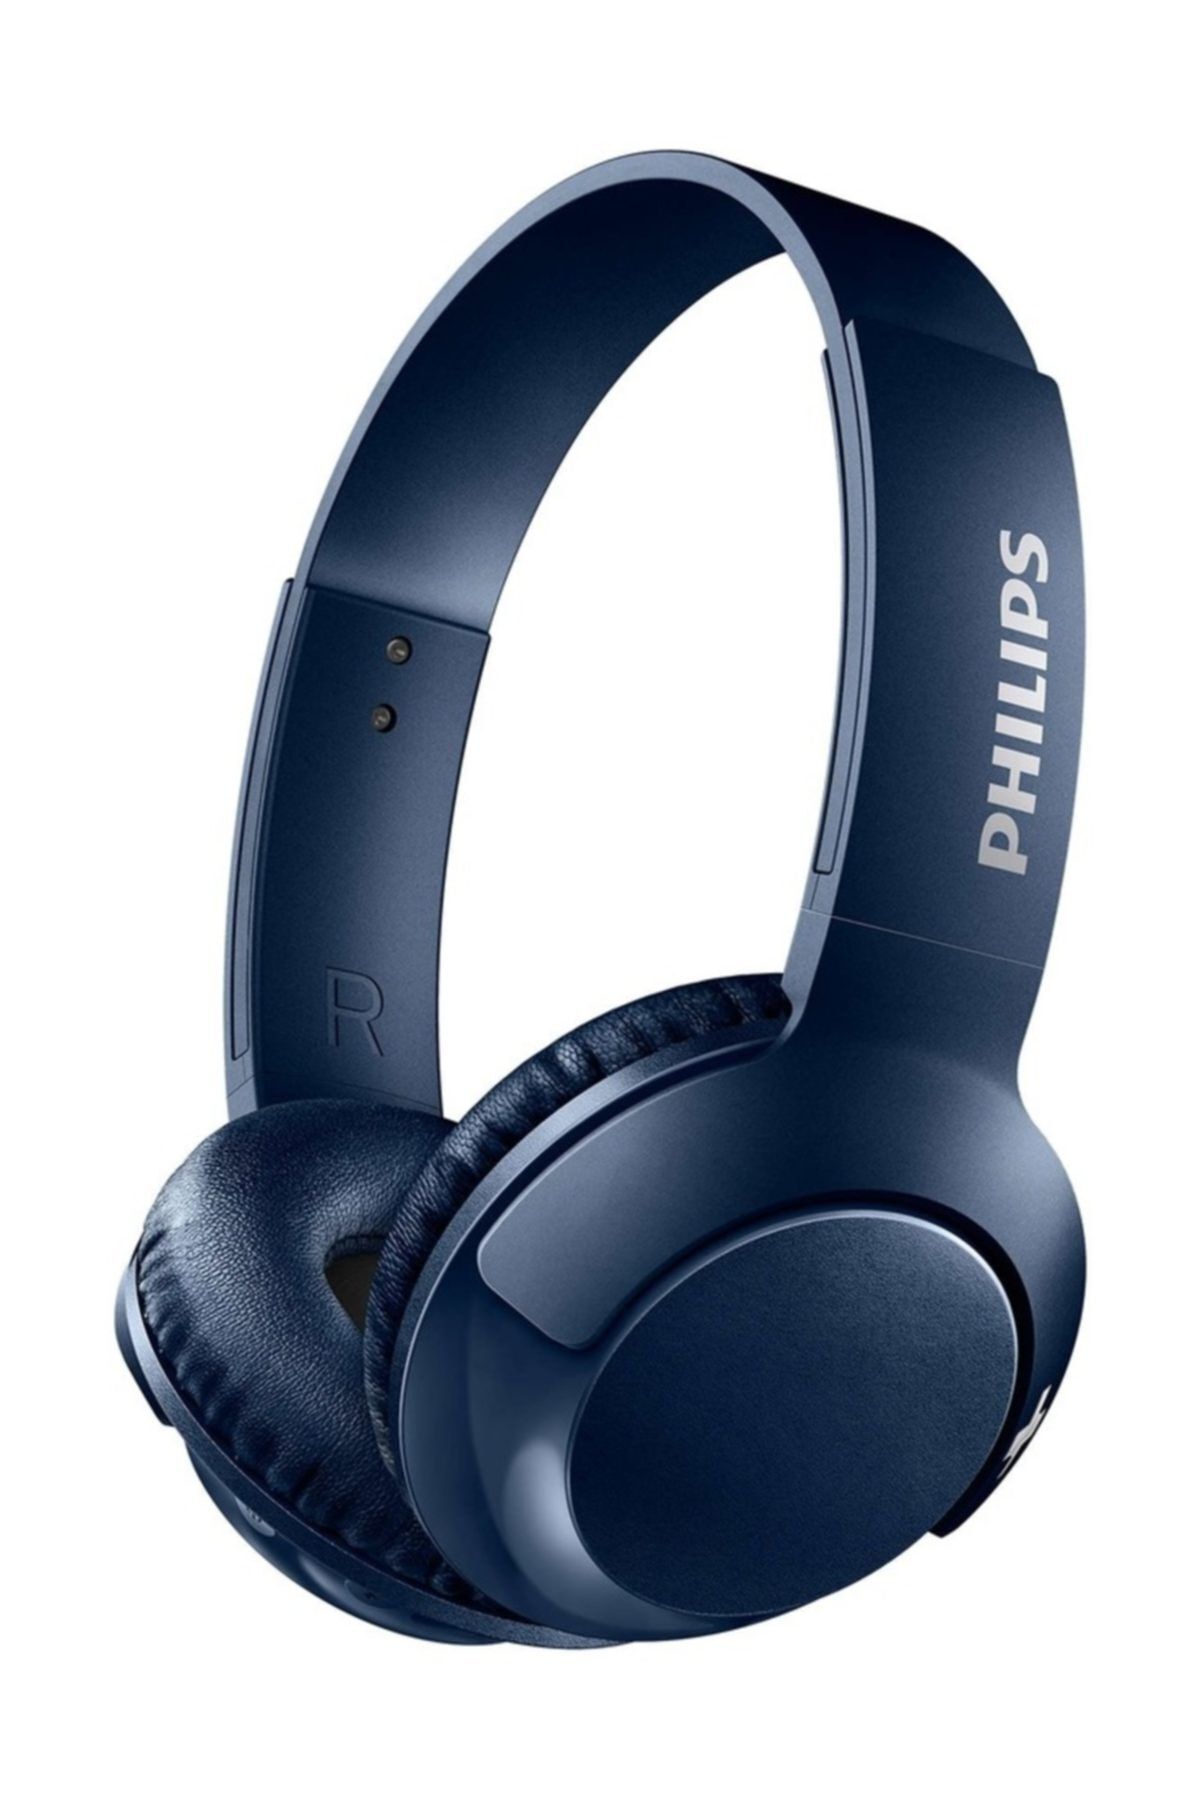 Philips SHB3075BL/00 BASS+ Mikrofonlu Bluetooth Kulaklık - Mavi